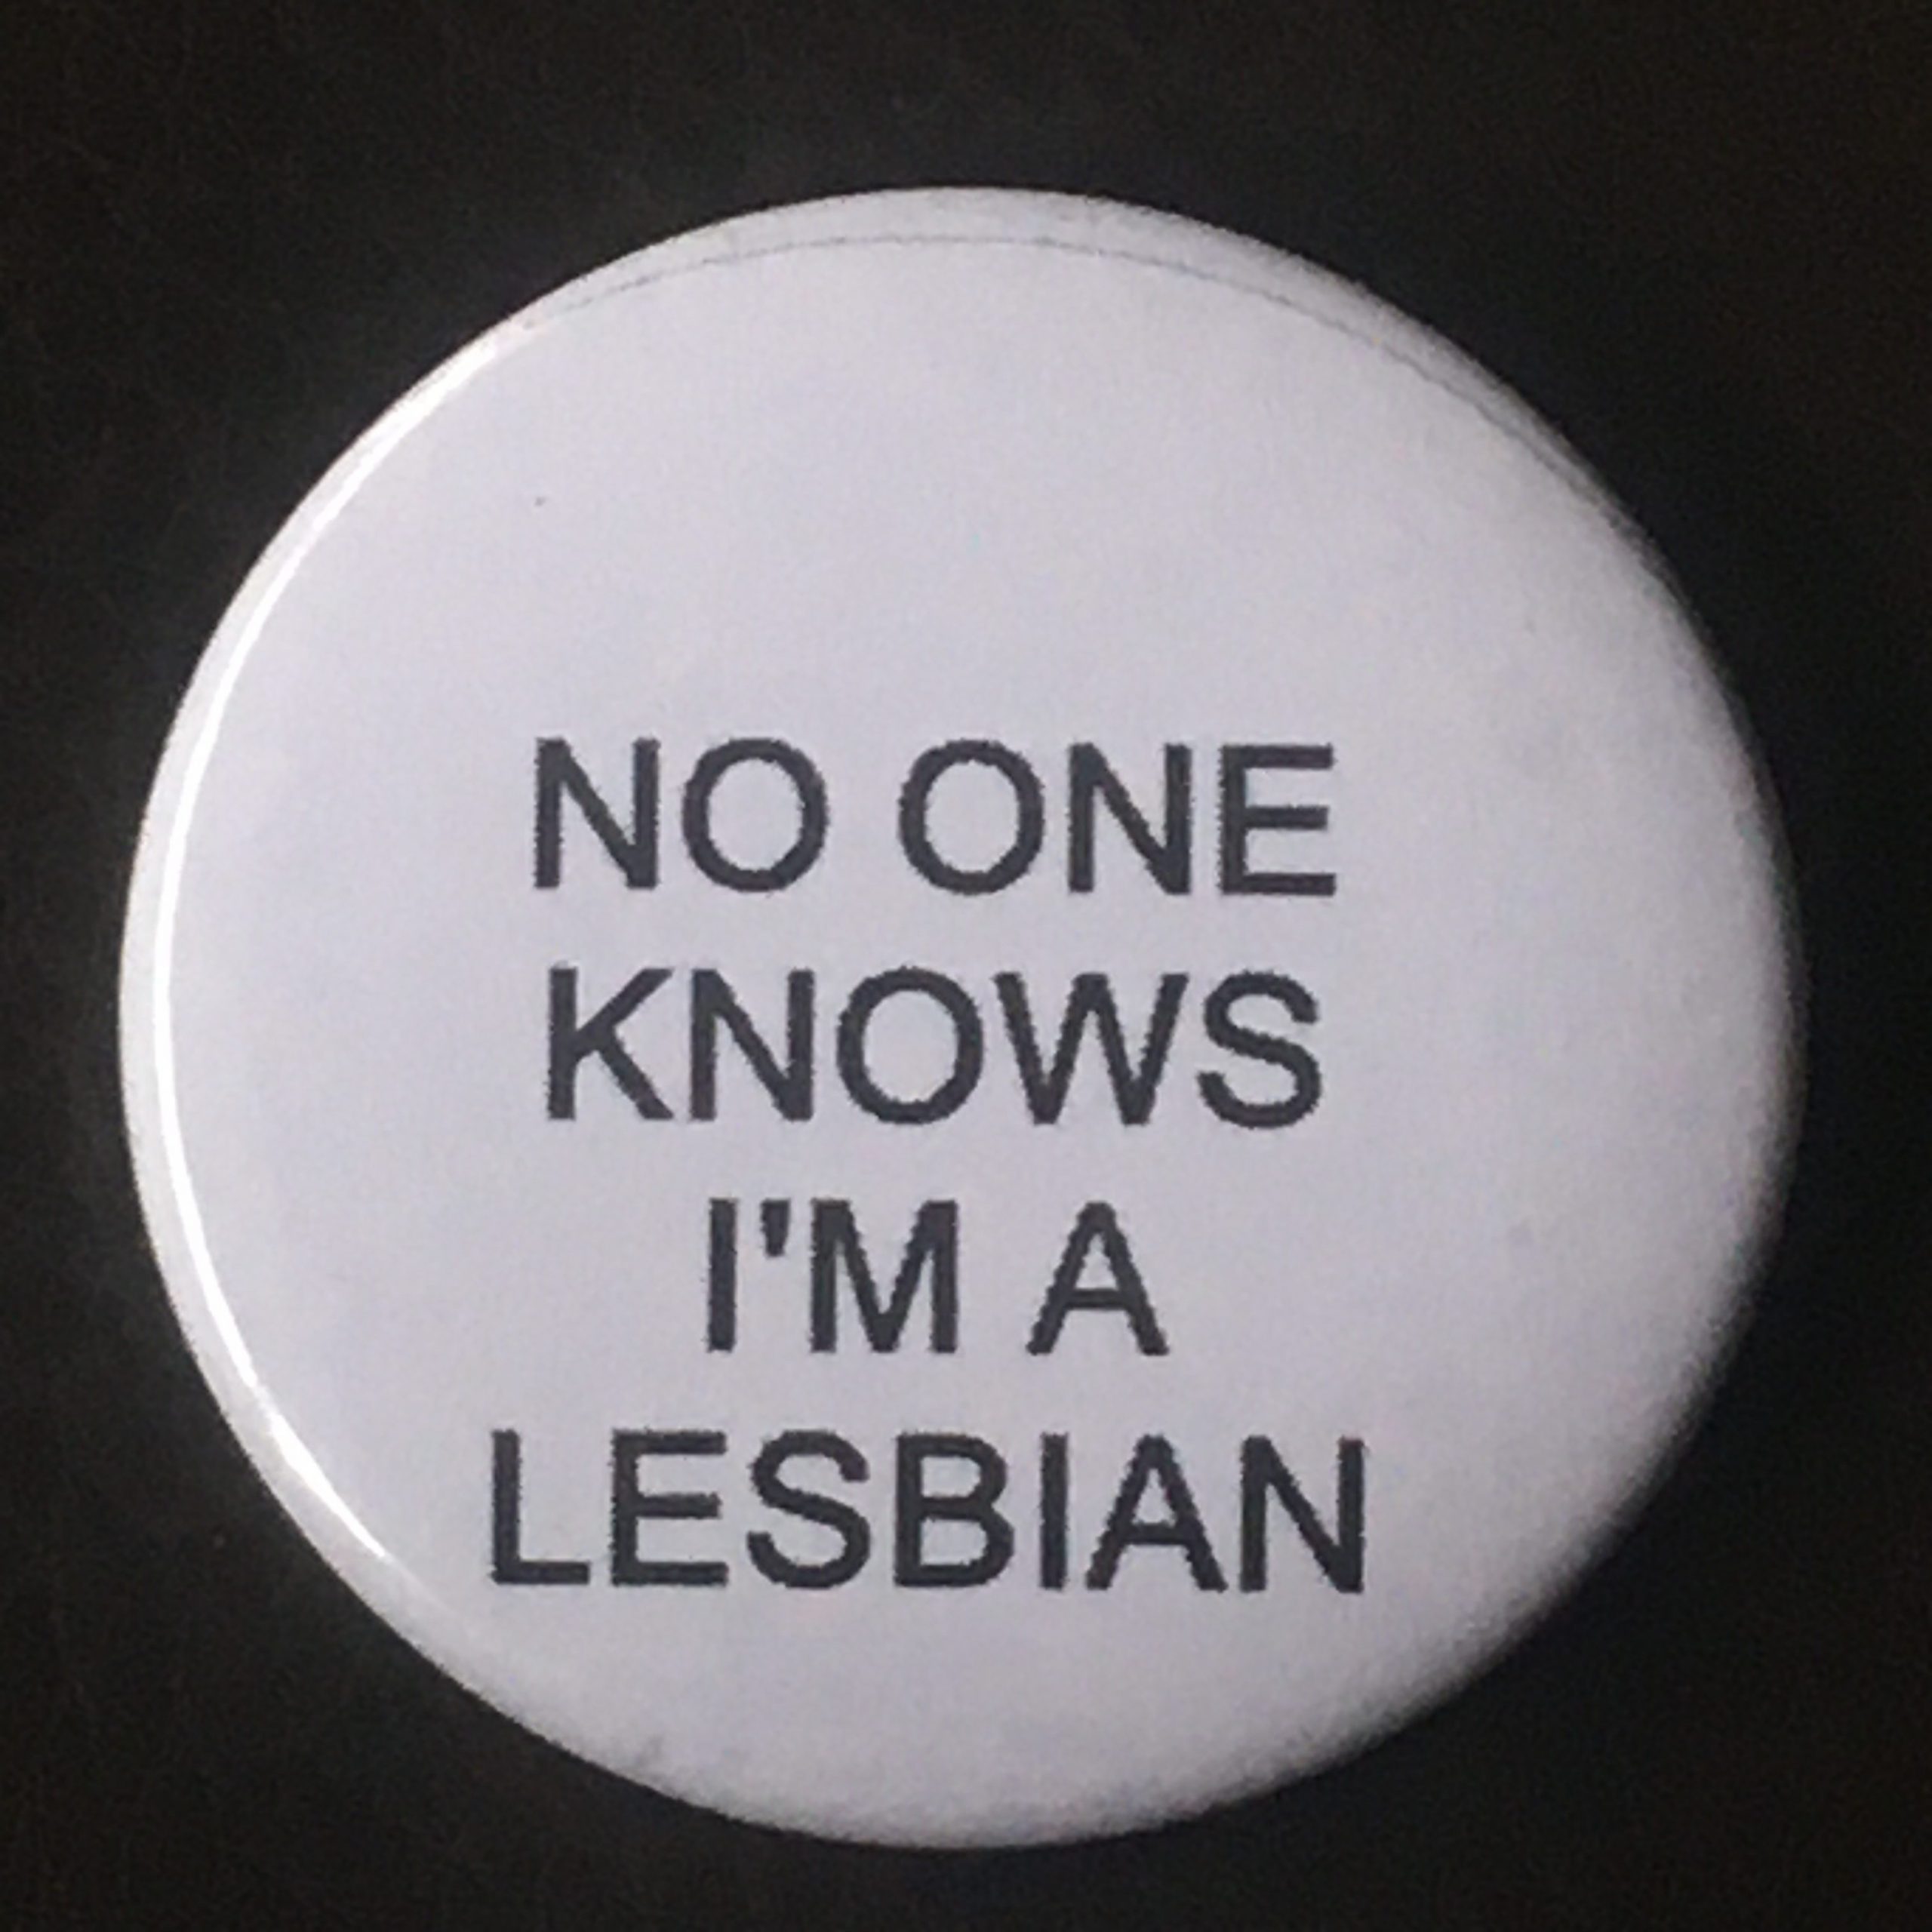 I’m A Lesbian Pin Theatre Garage